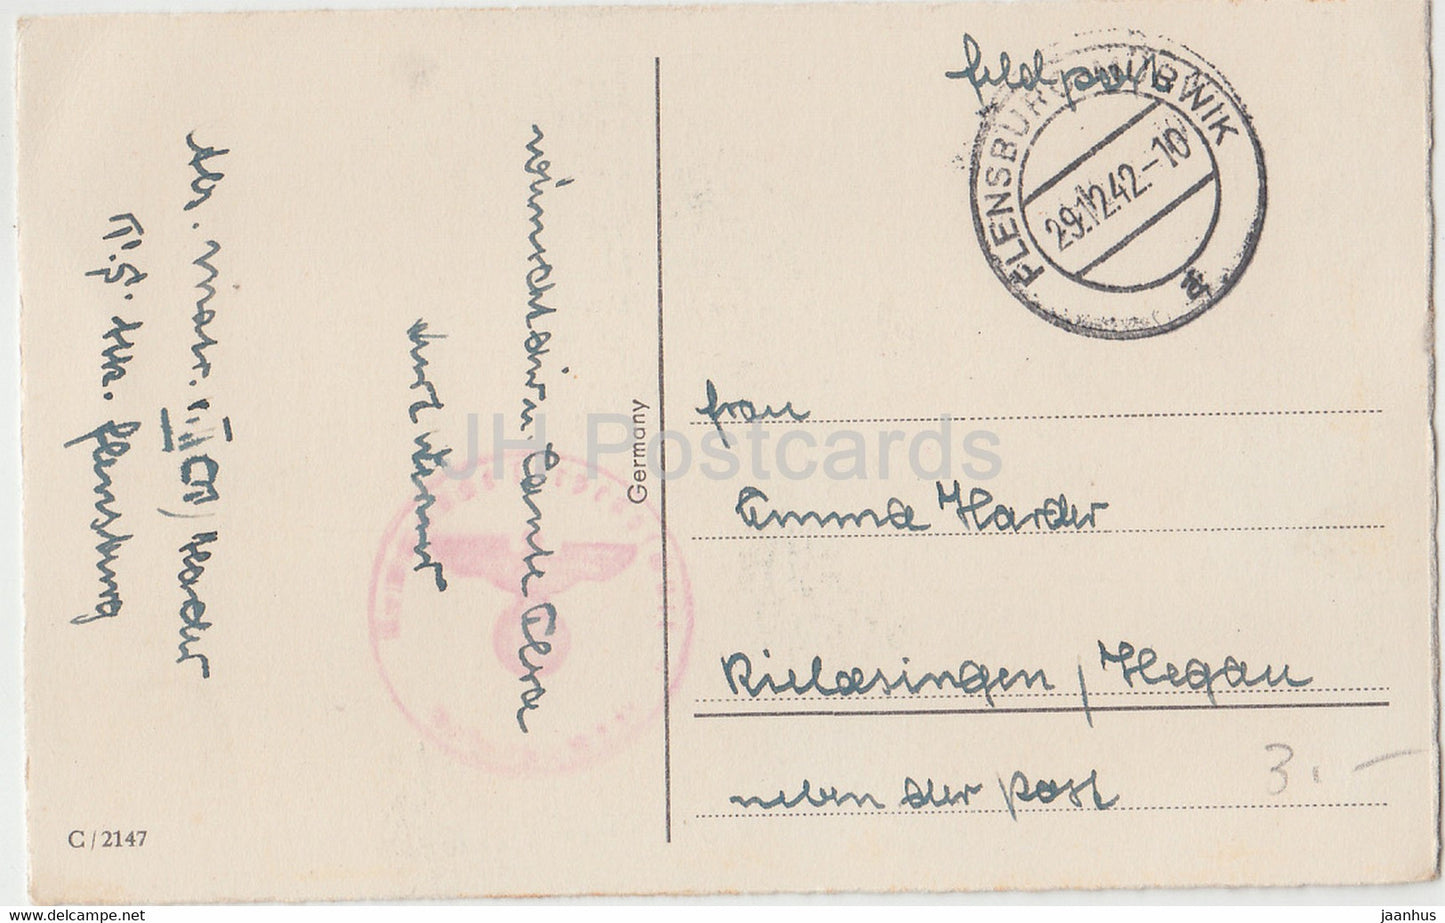 Carte de vœux du Nouvel An - Ein Frohes Neues Jahr - tasses - fer à cheval - Feldpost 2147 - carte postale ancienne - 1942 - Allemagne - utilisé